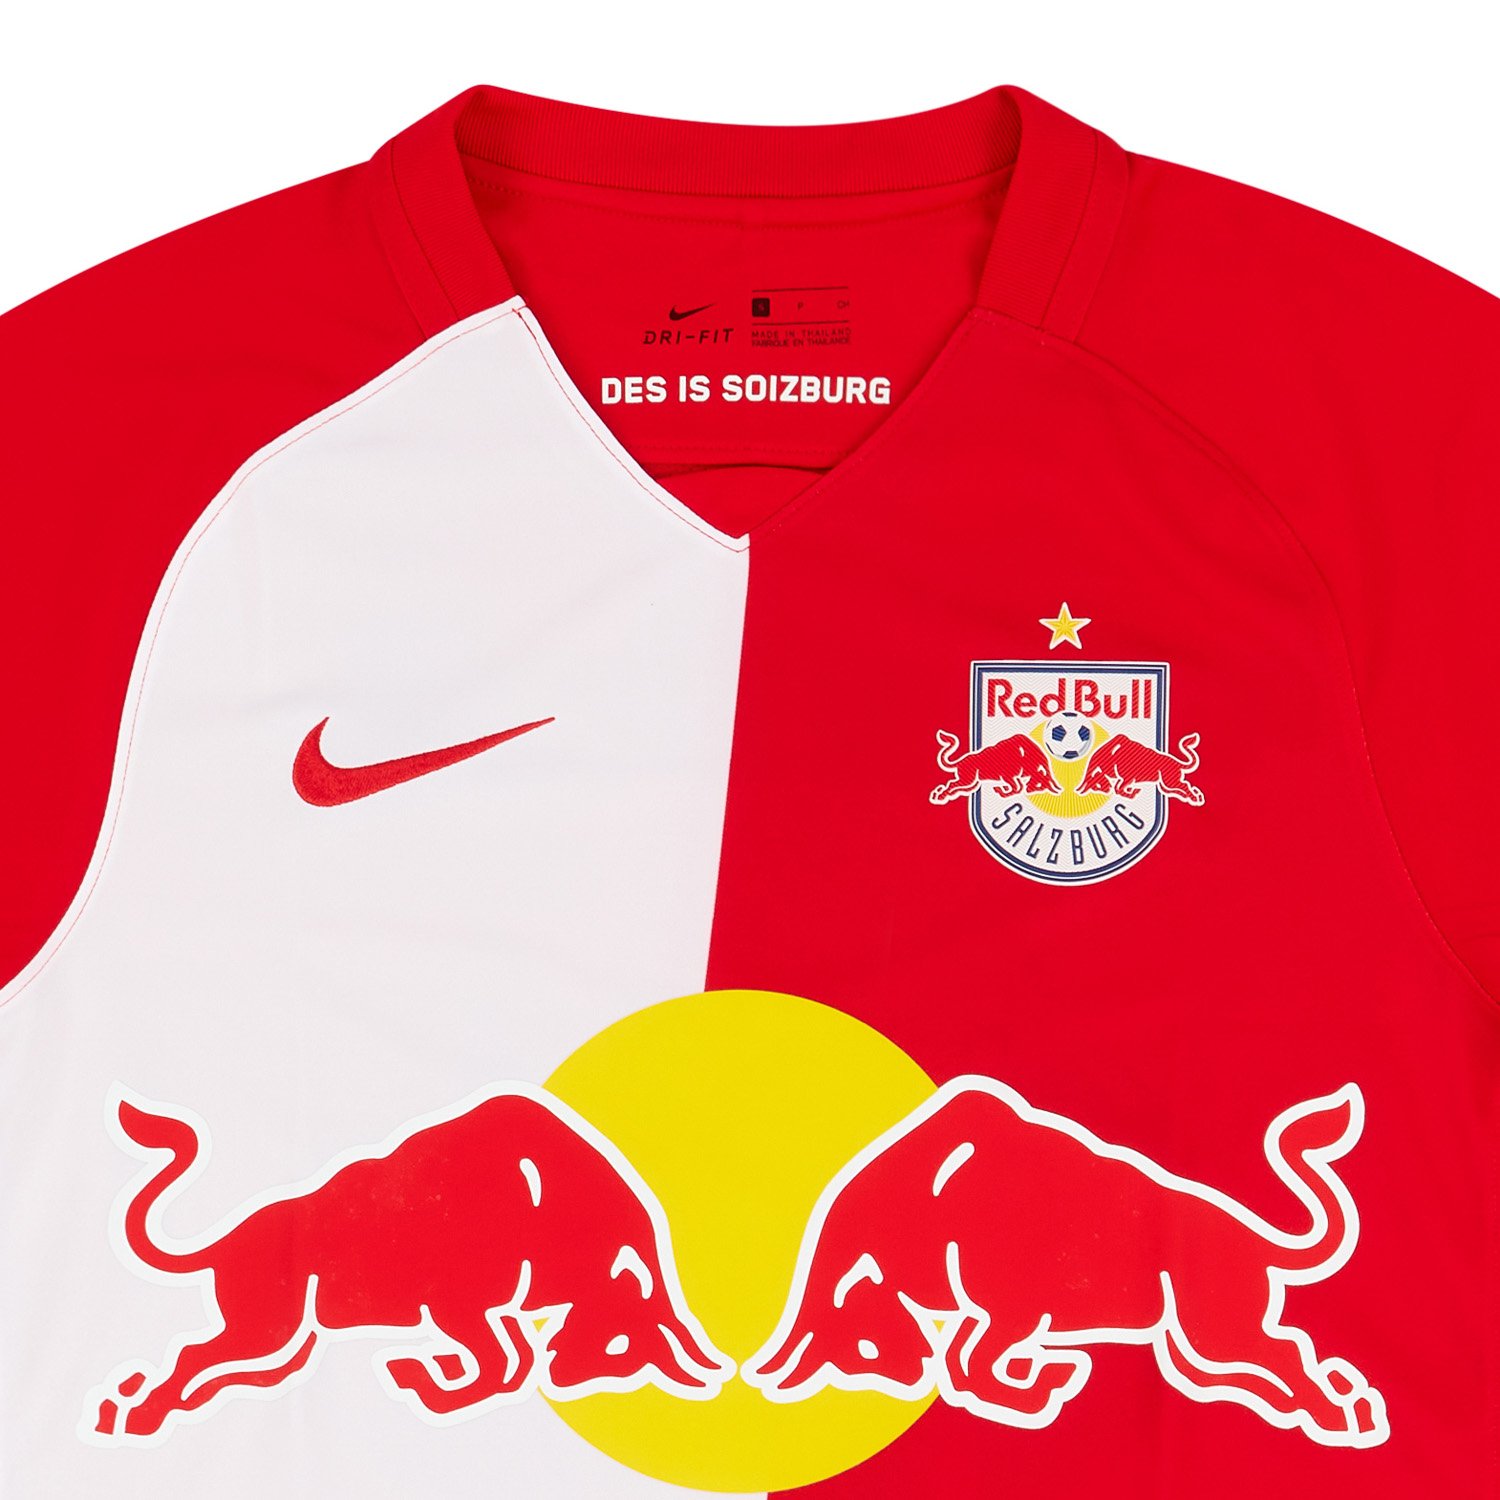 2020-21 Red Bull Salzburg Home Shirt Daka #20